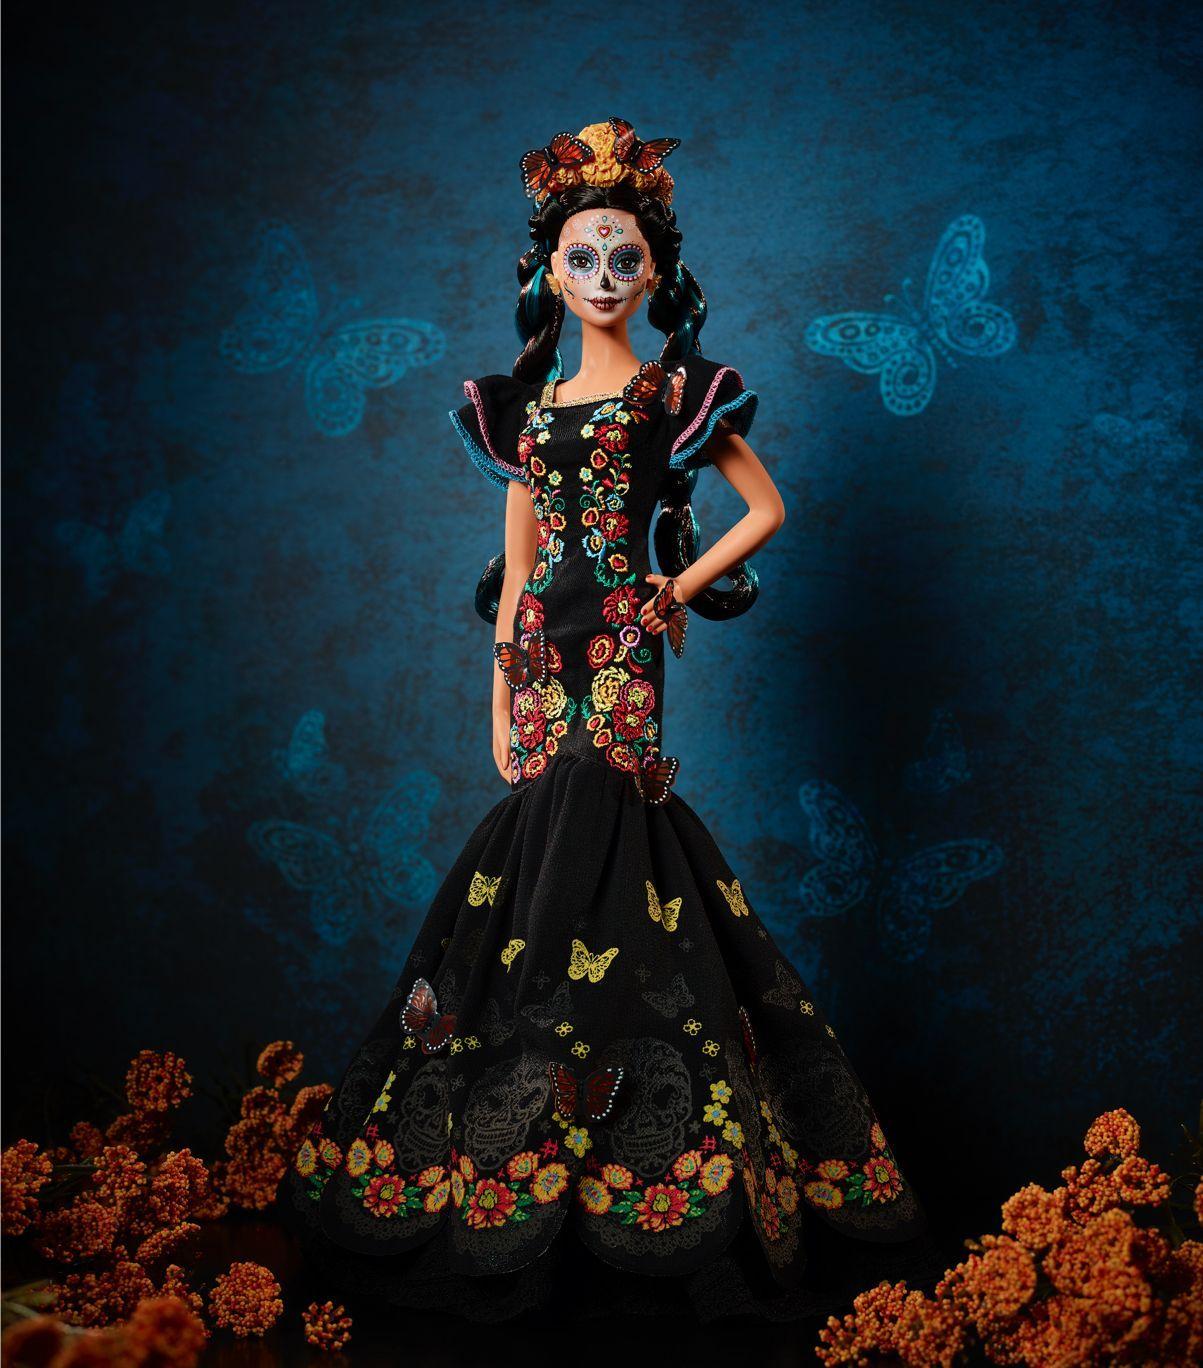 Mattel is releasing a 'Día de los Muertos' Barbie doll